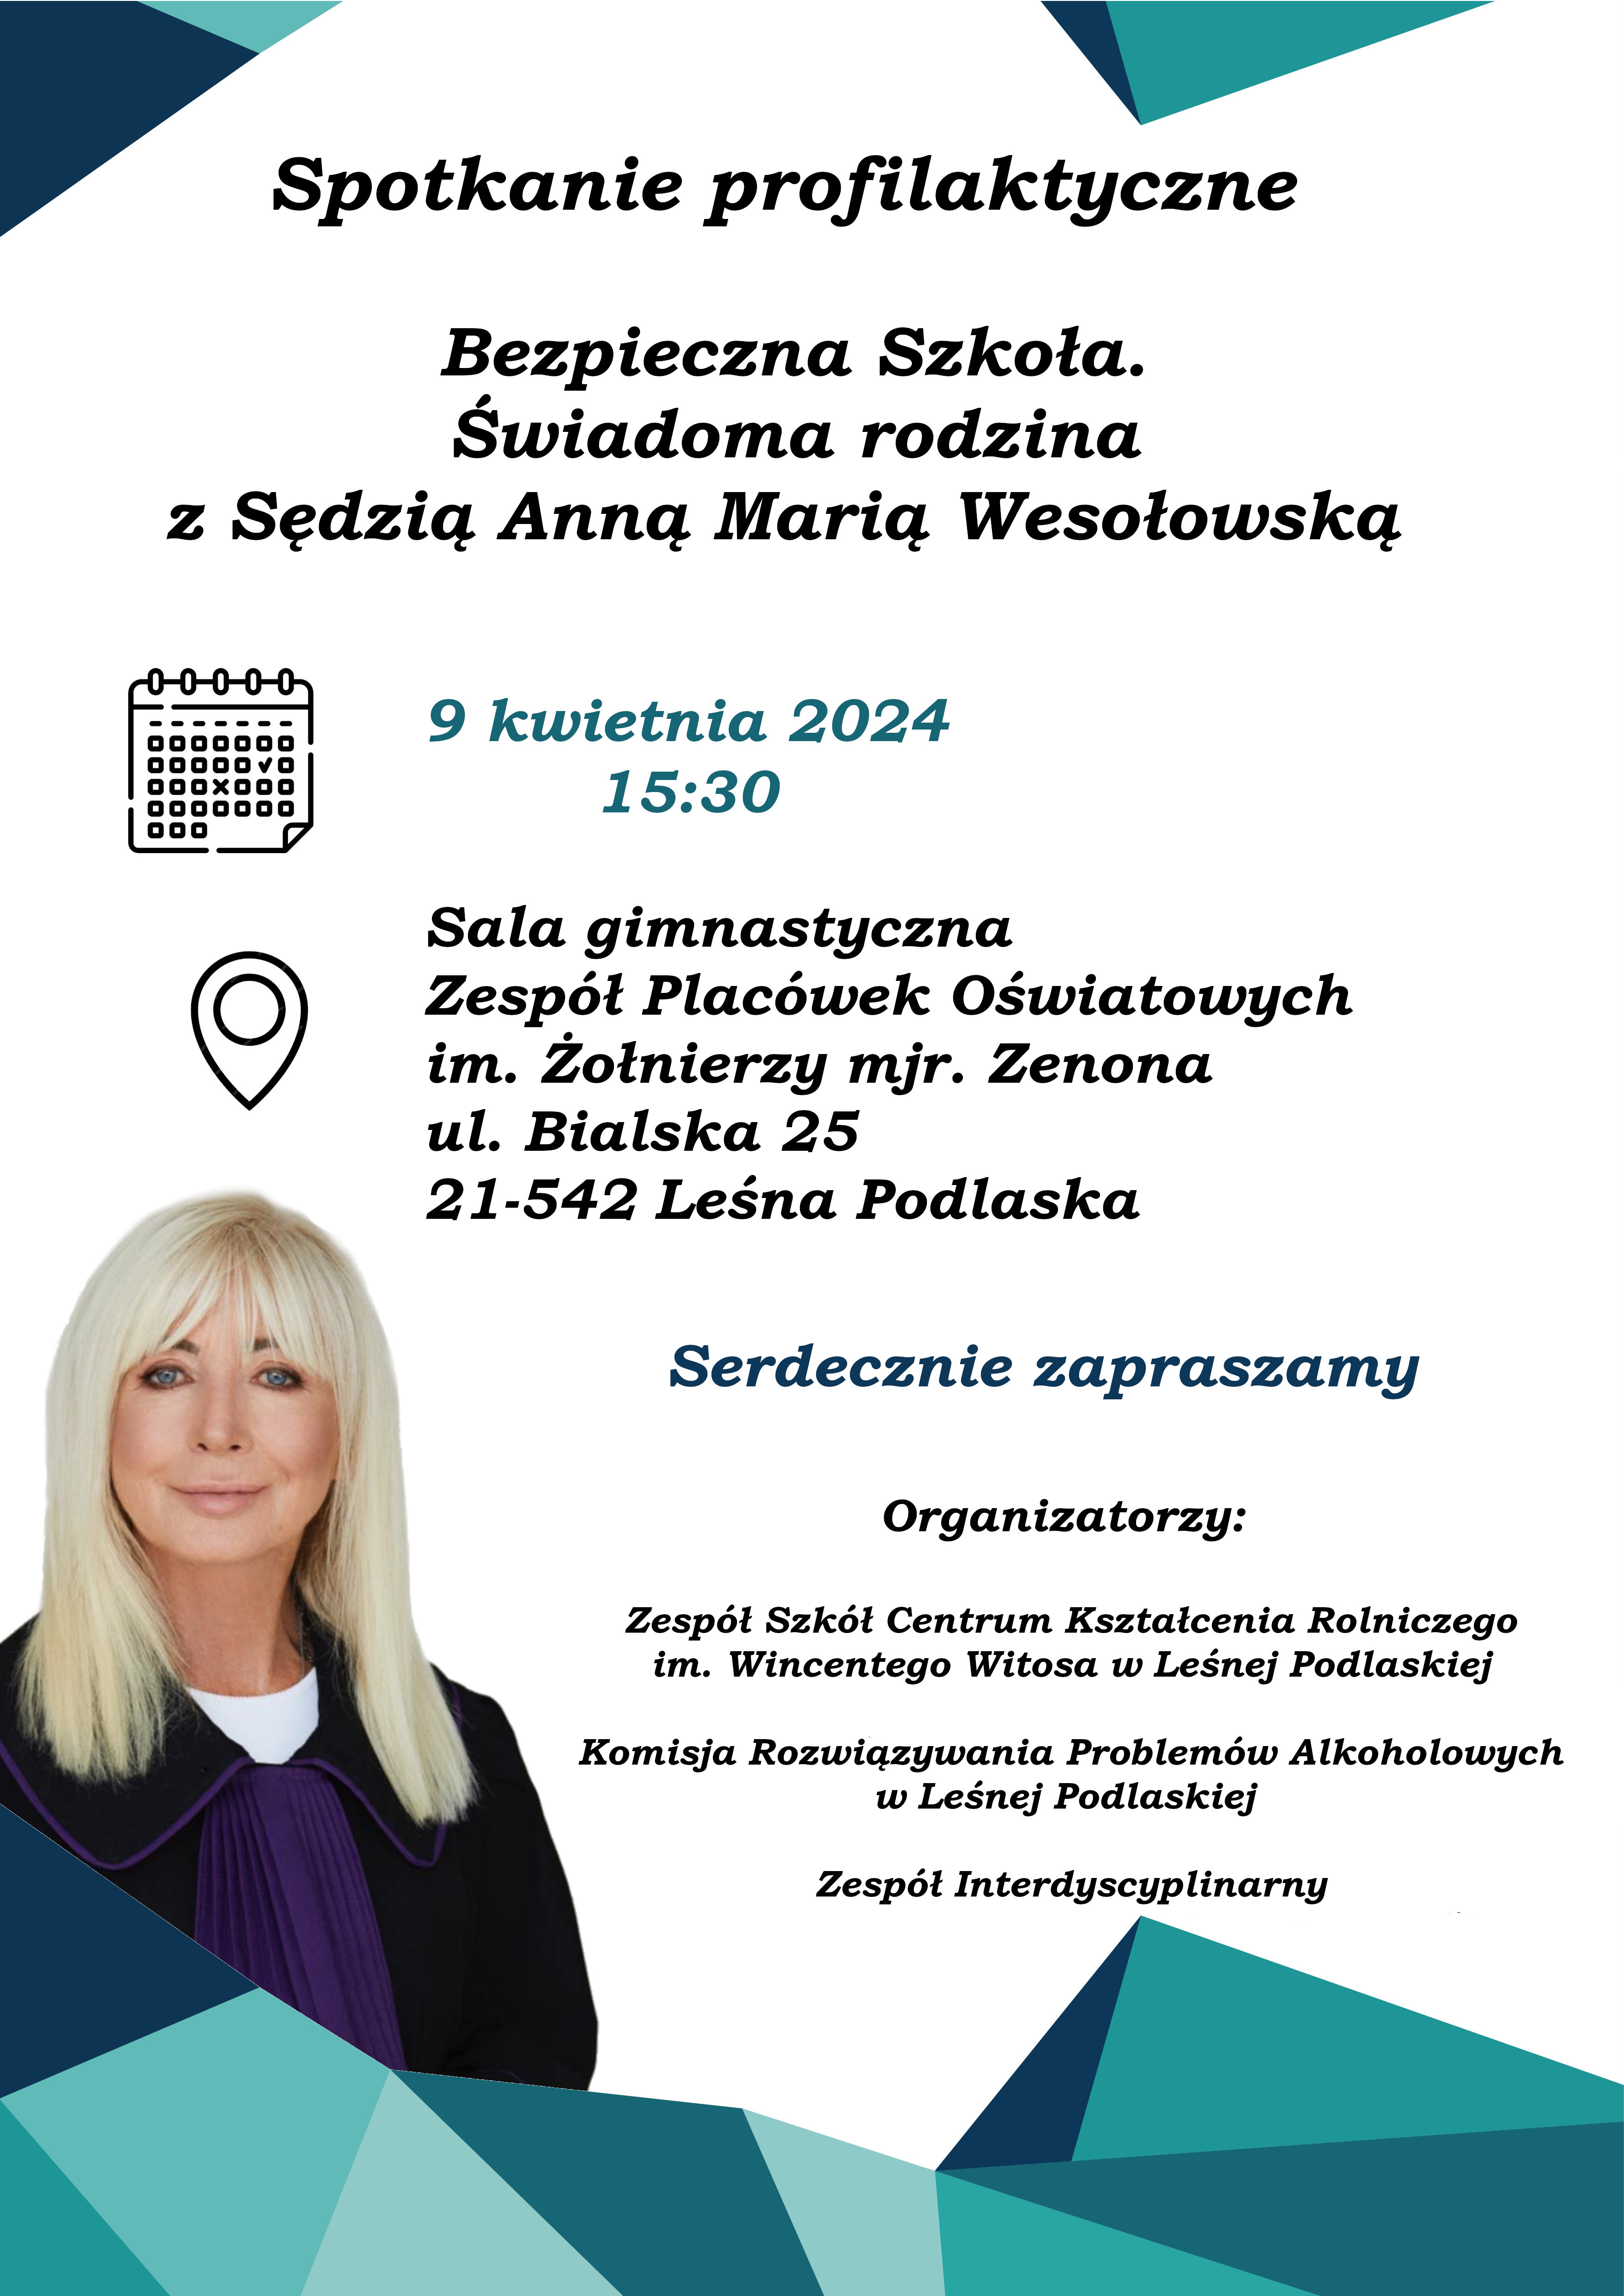 Spotkanie profilaktyczne - bezpieczna szkoła, świadoma rodzina - z Sędzią Anną Marią Wesołowską.